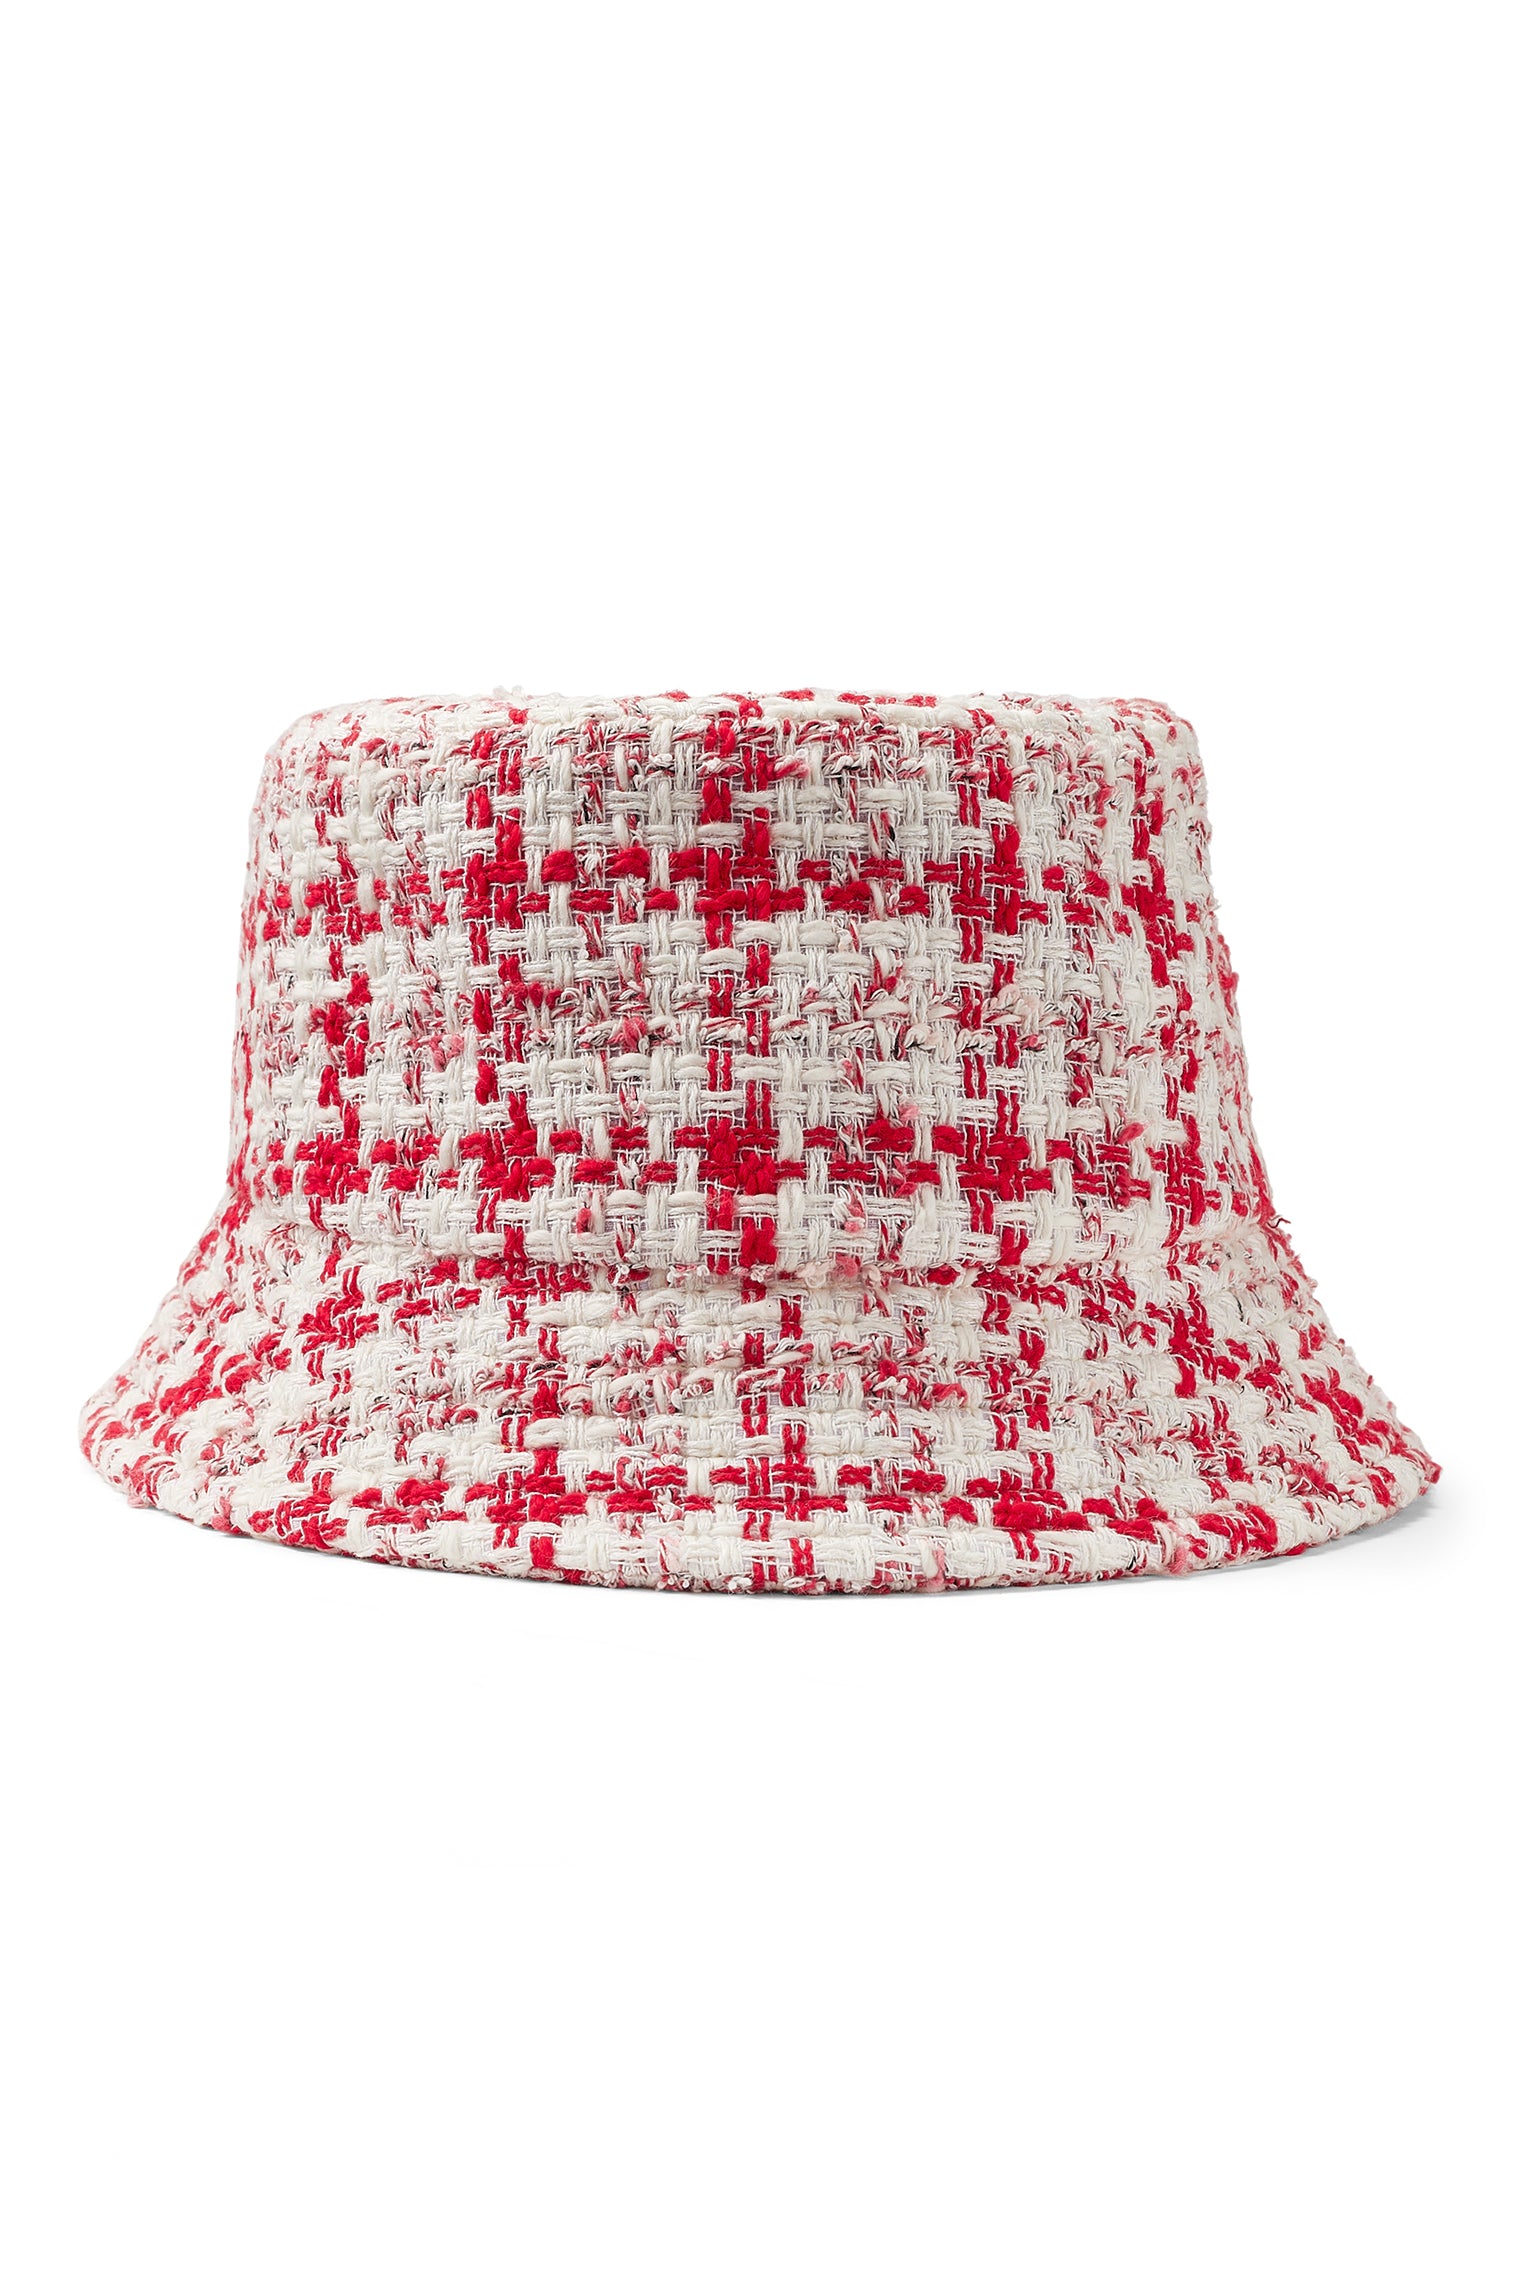 Rye Puppytooth Bucket Hat - Women’s Hats - Lock & Co. Hatters London UK